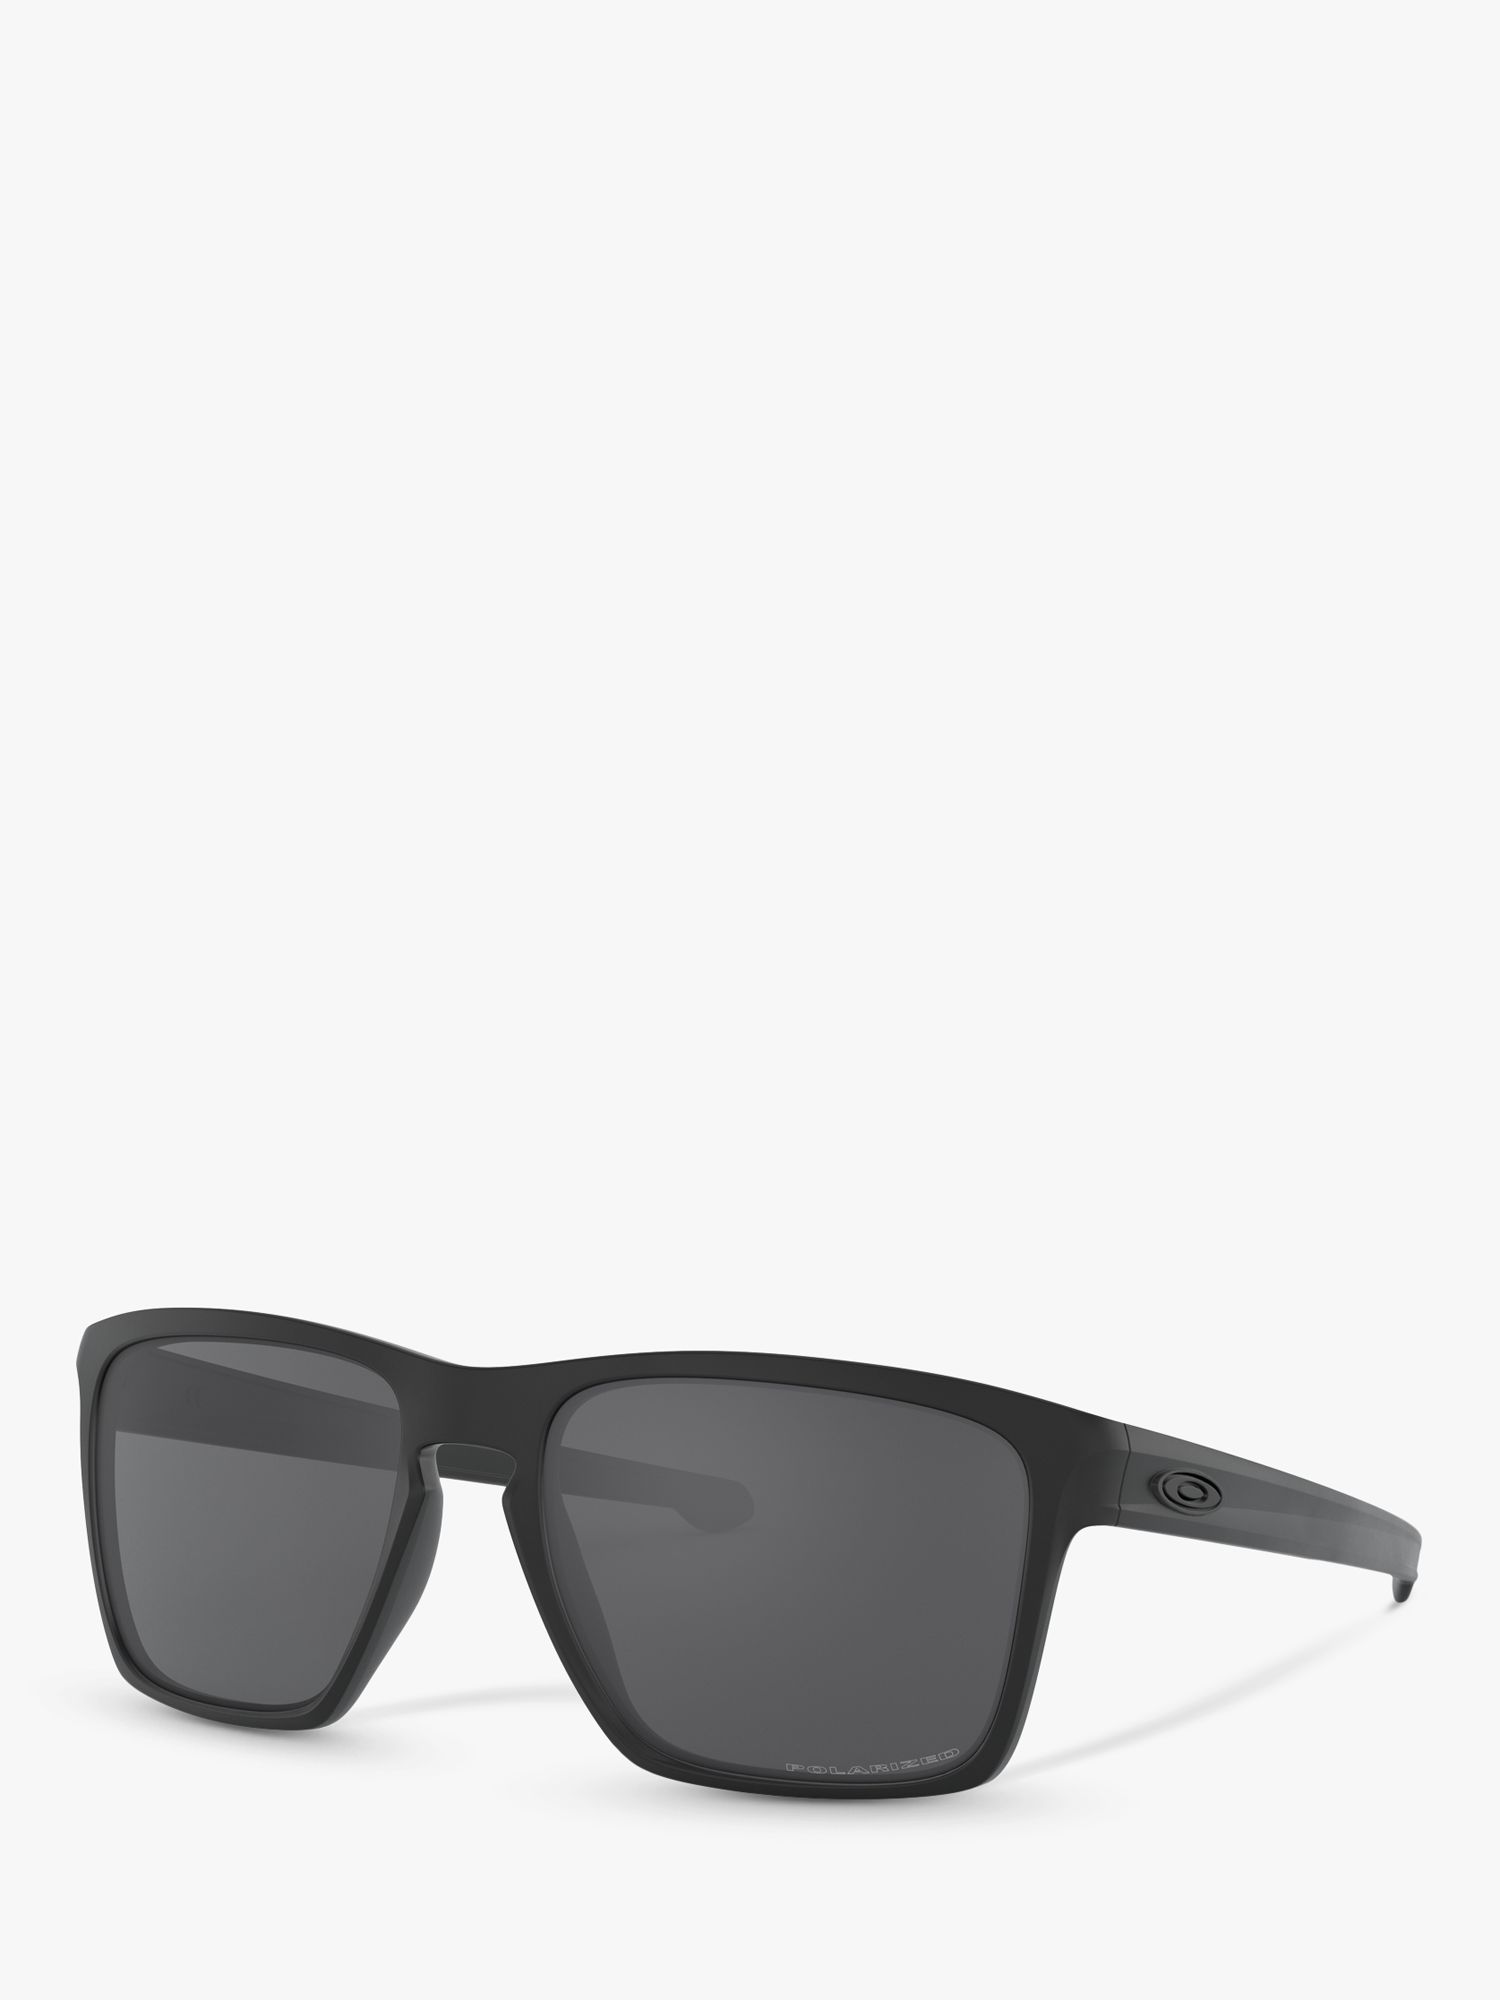 OO9341 Серебристые квадратные поляризованные солнцезащитные очки XL Oakley, черный чехол mypads e vano для micromax q450 canvas sliver 5